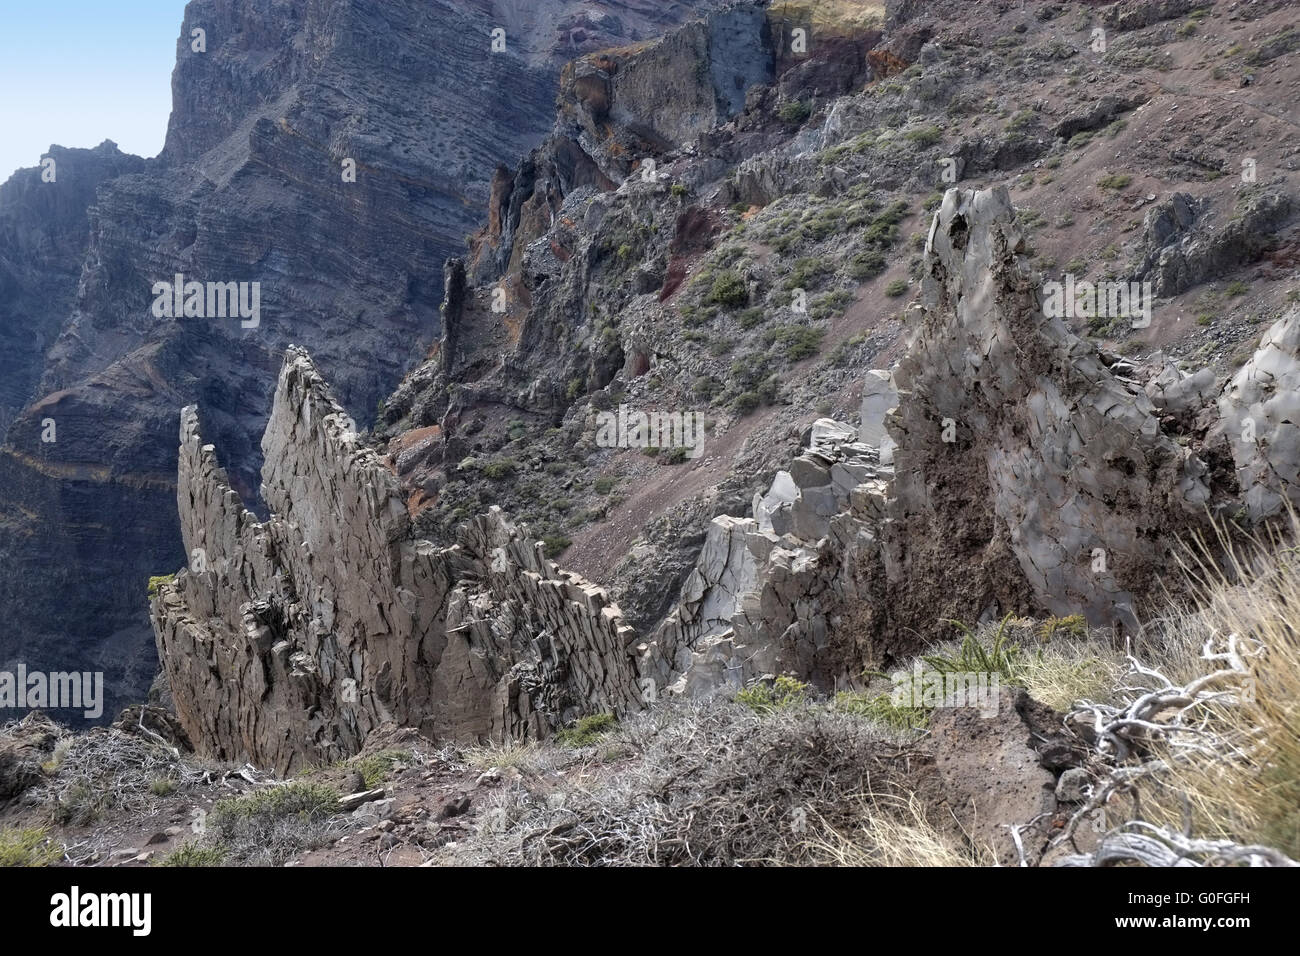 On the crater rim of the Caldera de Taburiente, La Palma Stock Photo